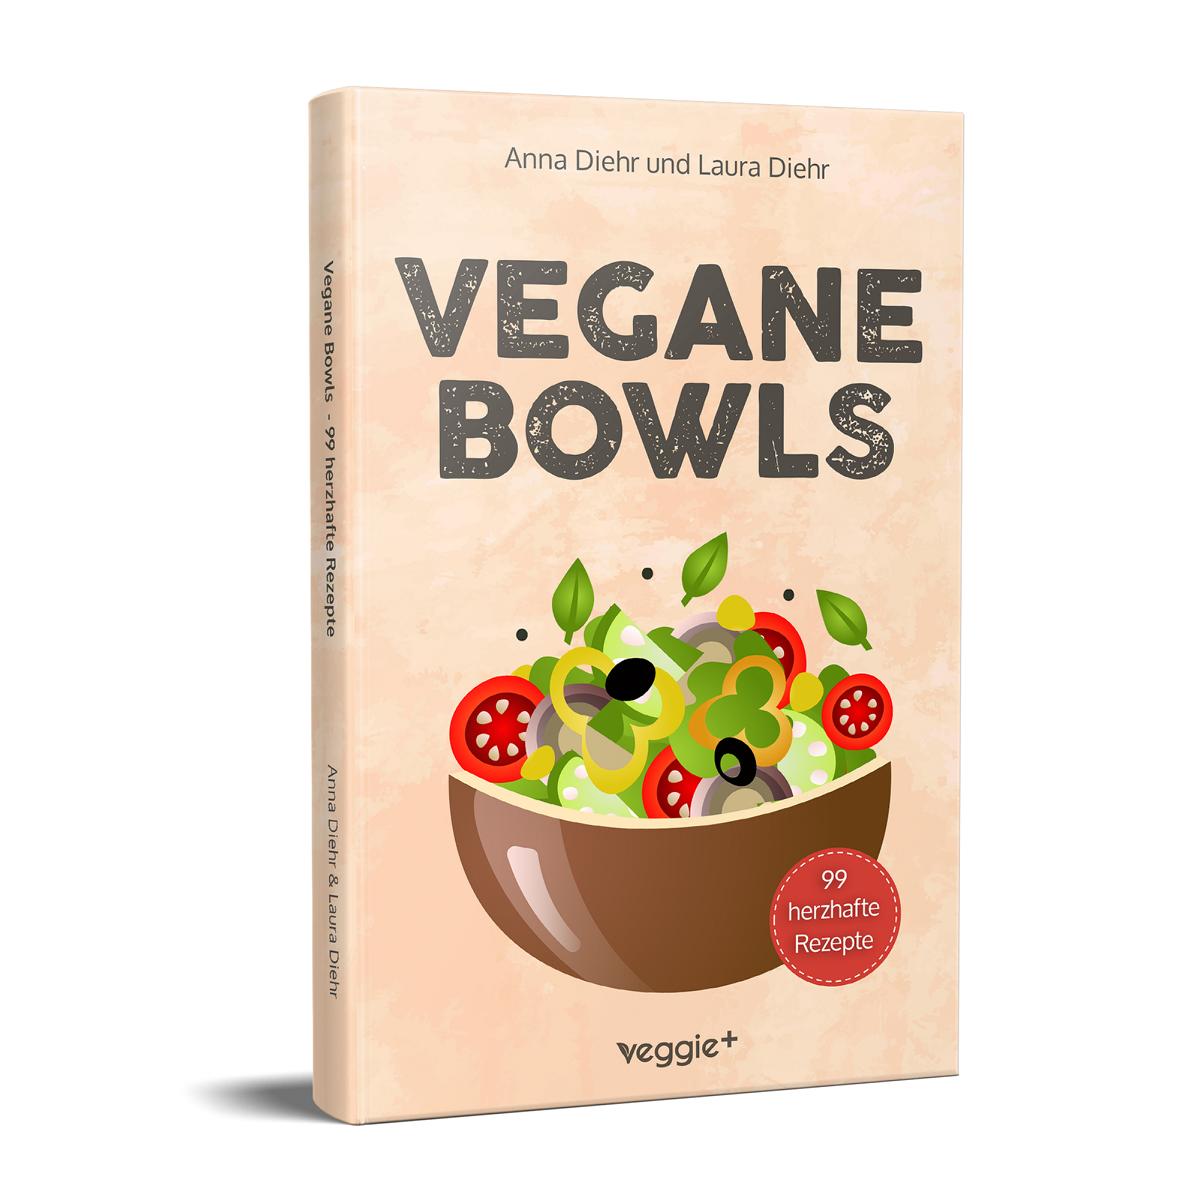 Vegane Bowls – 99 herzhafte Rezepte: Das große vegane Kochbuch mit den besten Bowl-Rezepten für herzhafte Gerichte und eine gesunde Ernährung von Anna Diehr und Laura Diehr im veggie + verlag